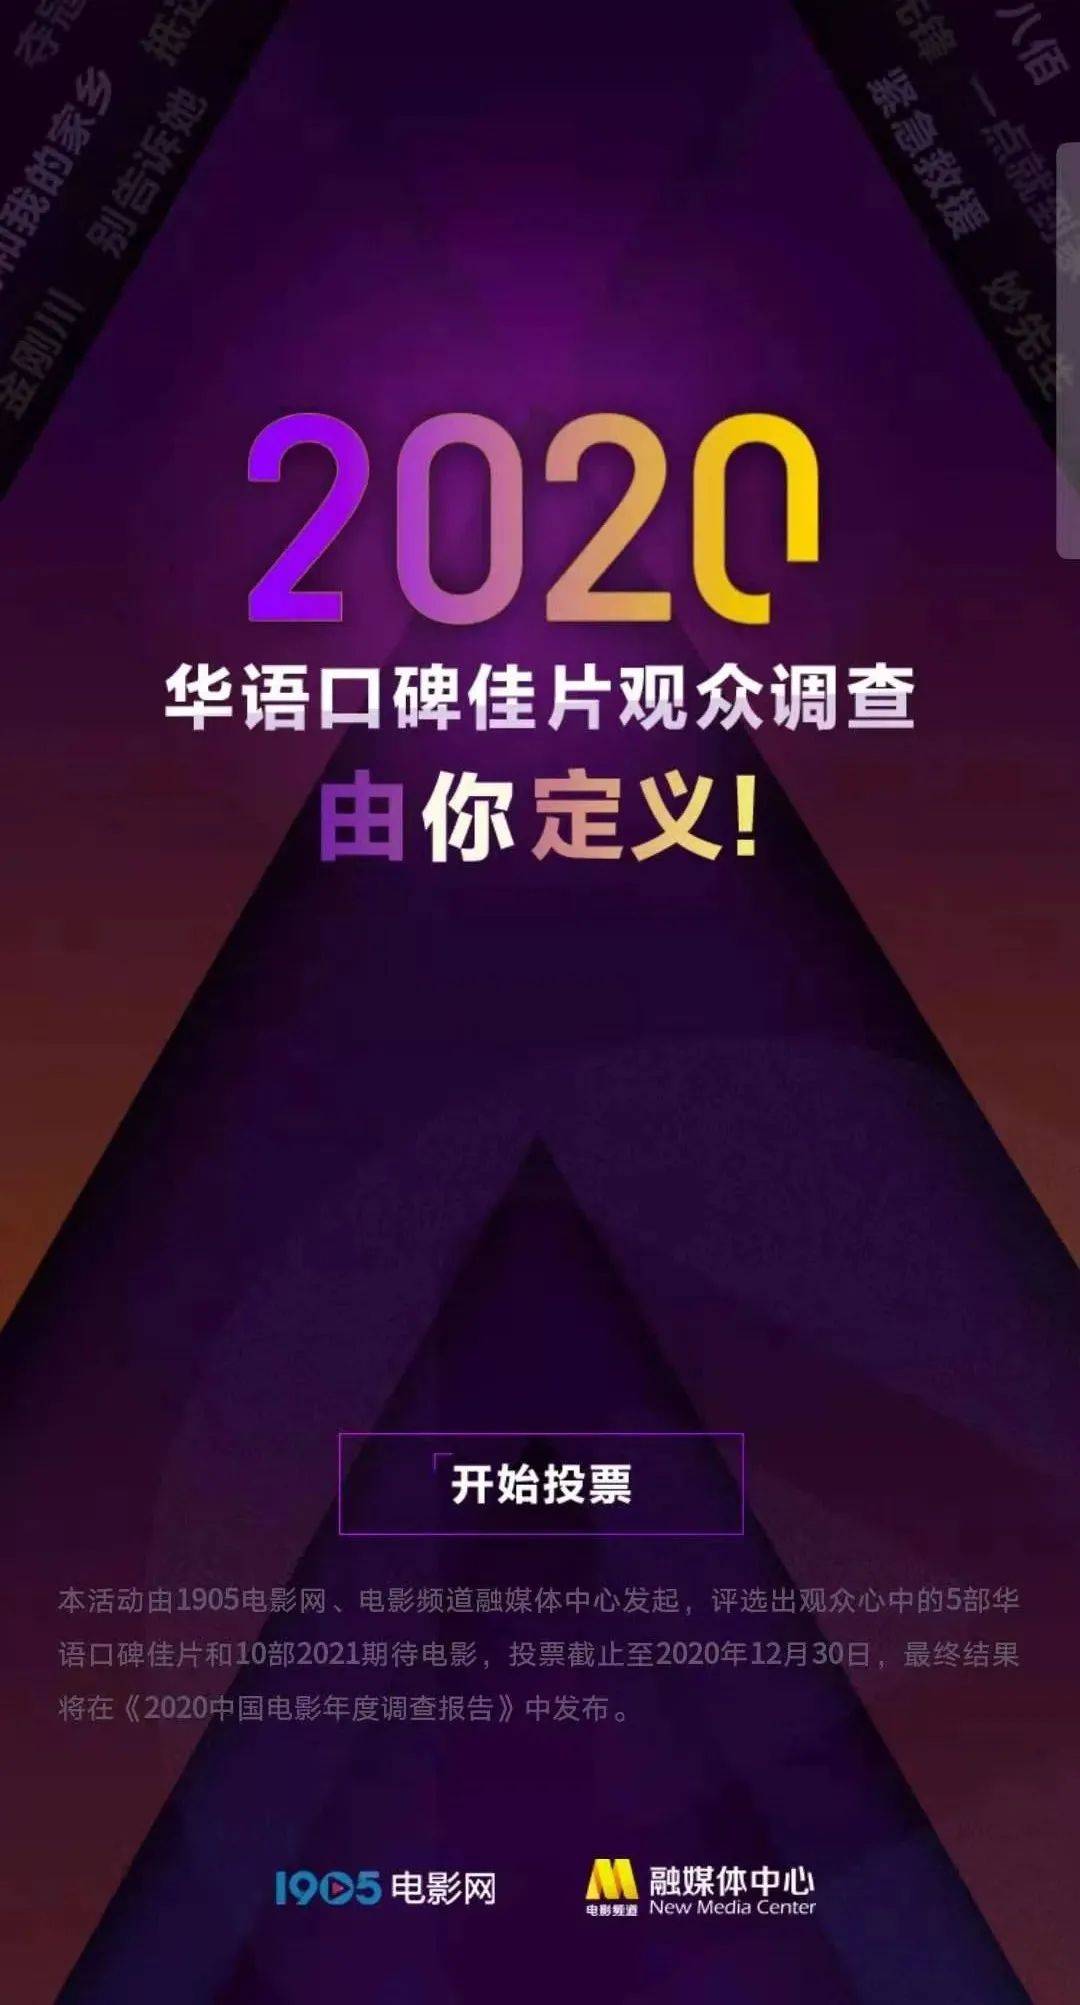 “欧宝体育app”
影戏频道邀您晒出2020年度片单